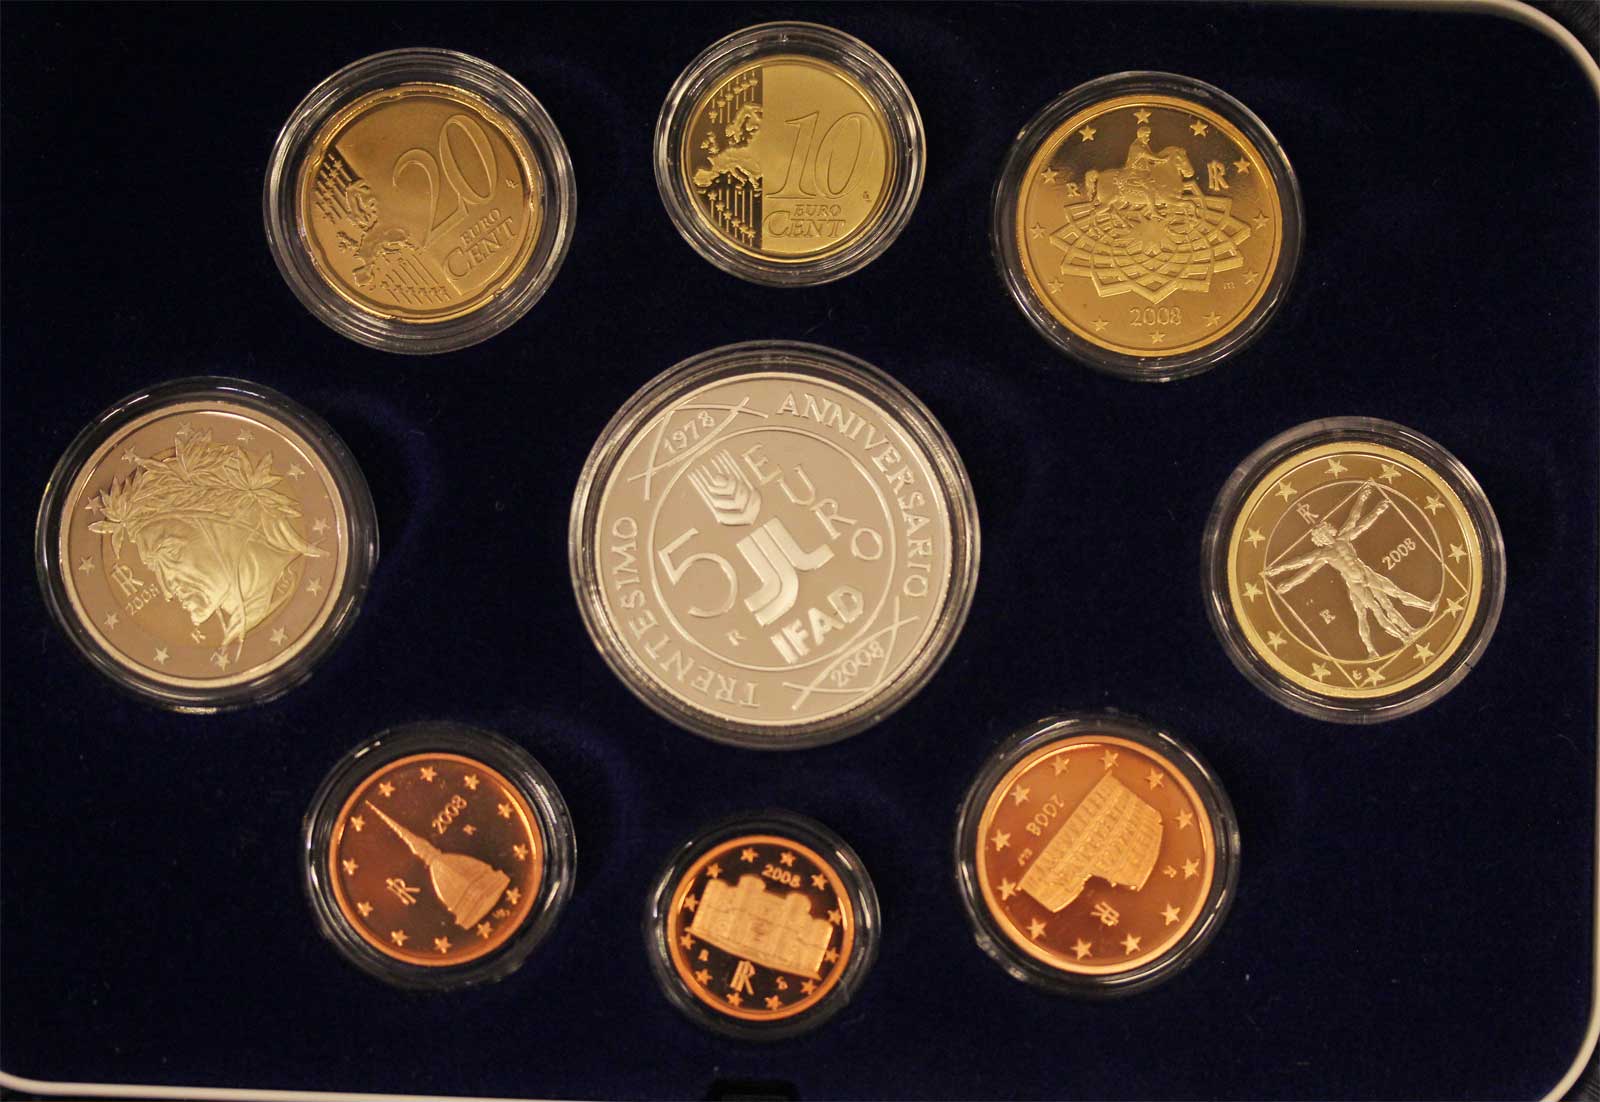 Serie completa di 9 monete in confezione ufficiale con moneta da 5 euro in Ag "30 Anniv. Fondazione IFAD"